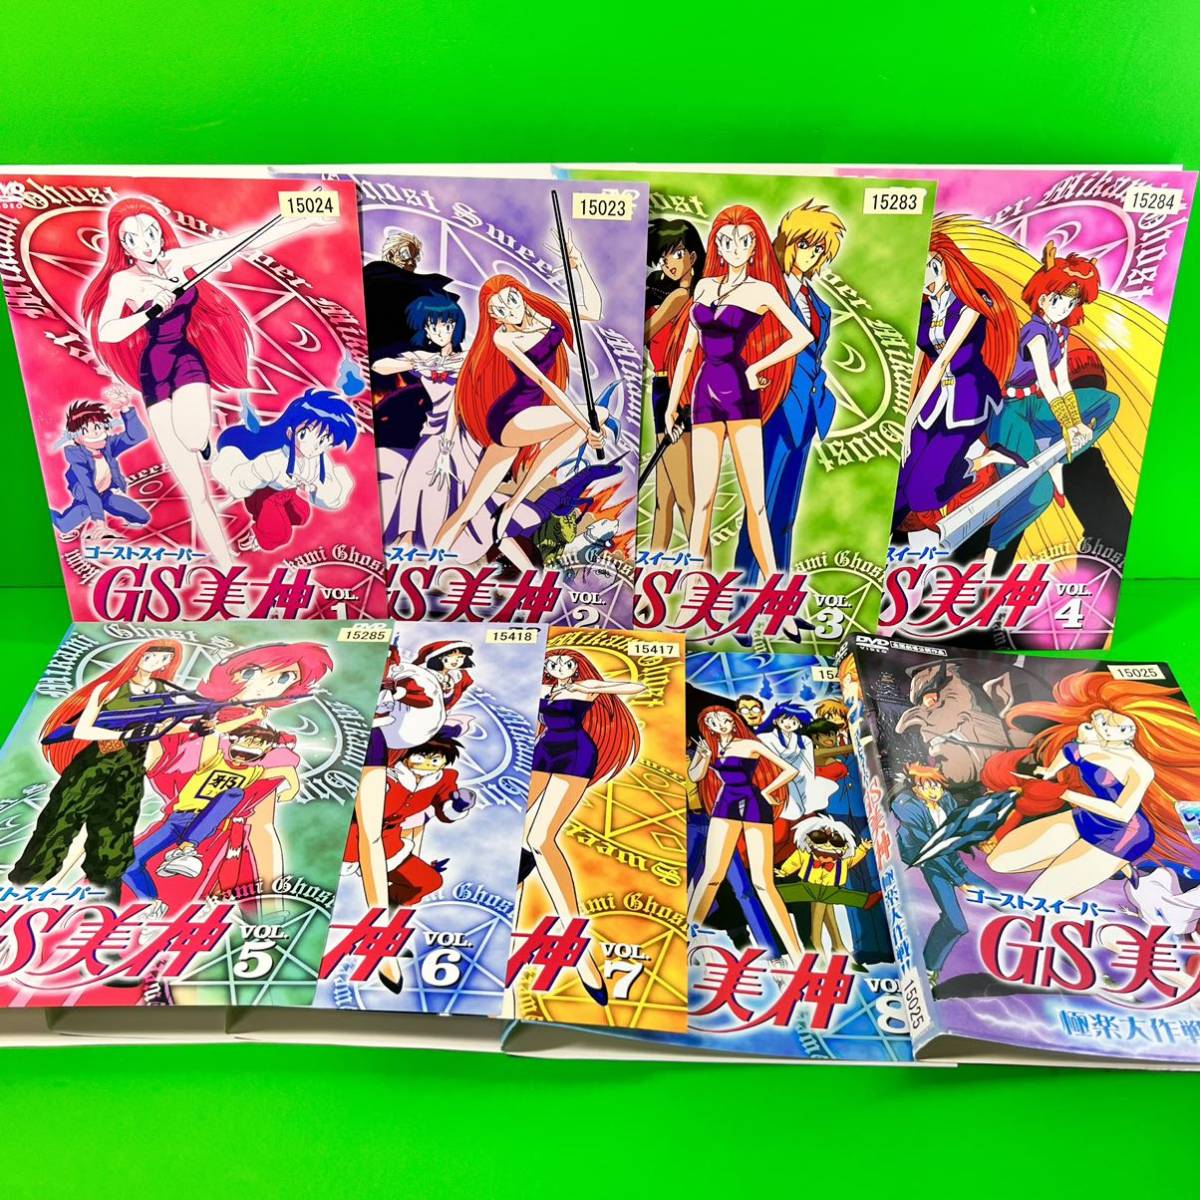 百貨店 GS ゴーストスイーパー 美神 劇場版 全1 DVD 9巻セット 